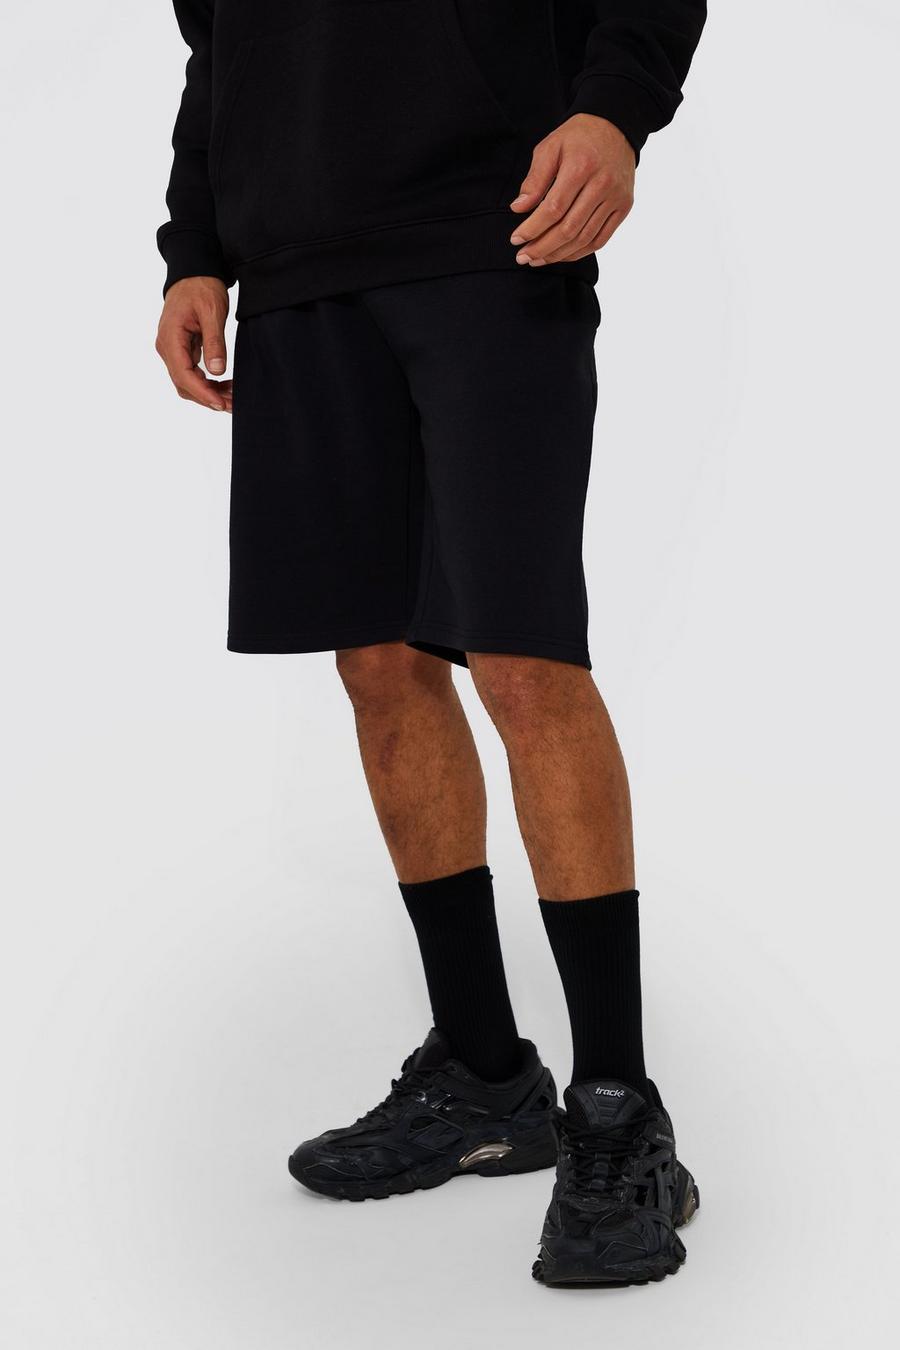 Pantaloncini Tall medi in jersey e cotone REEL, Black nero